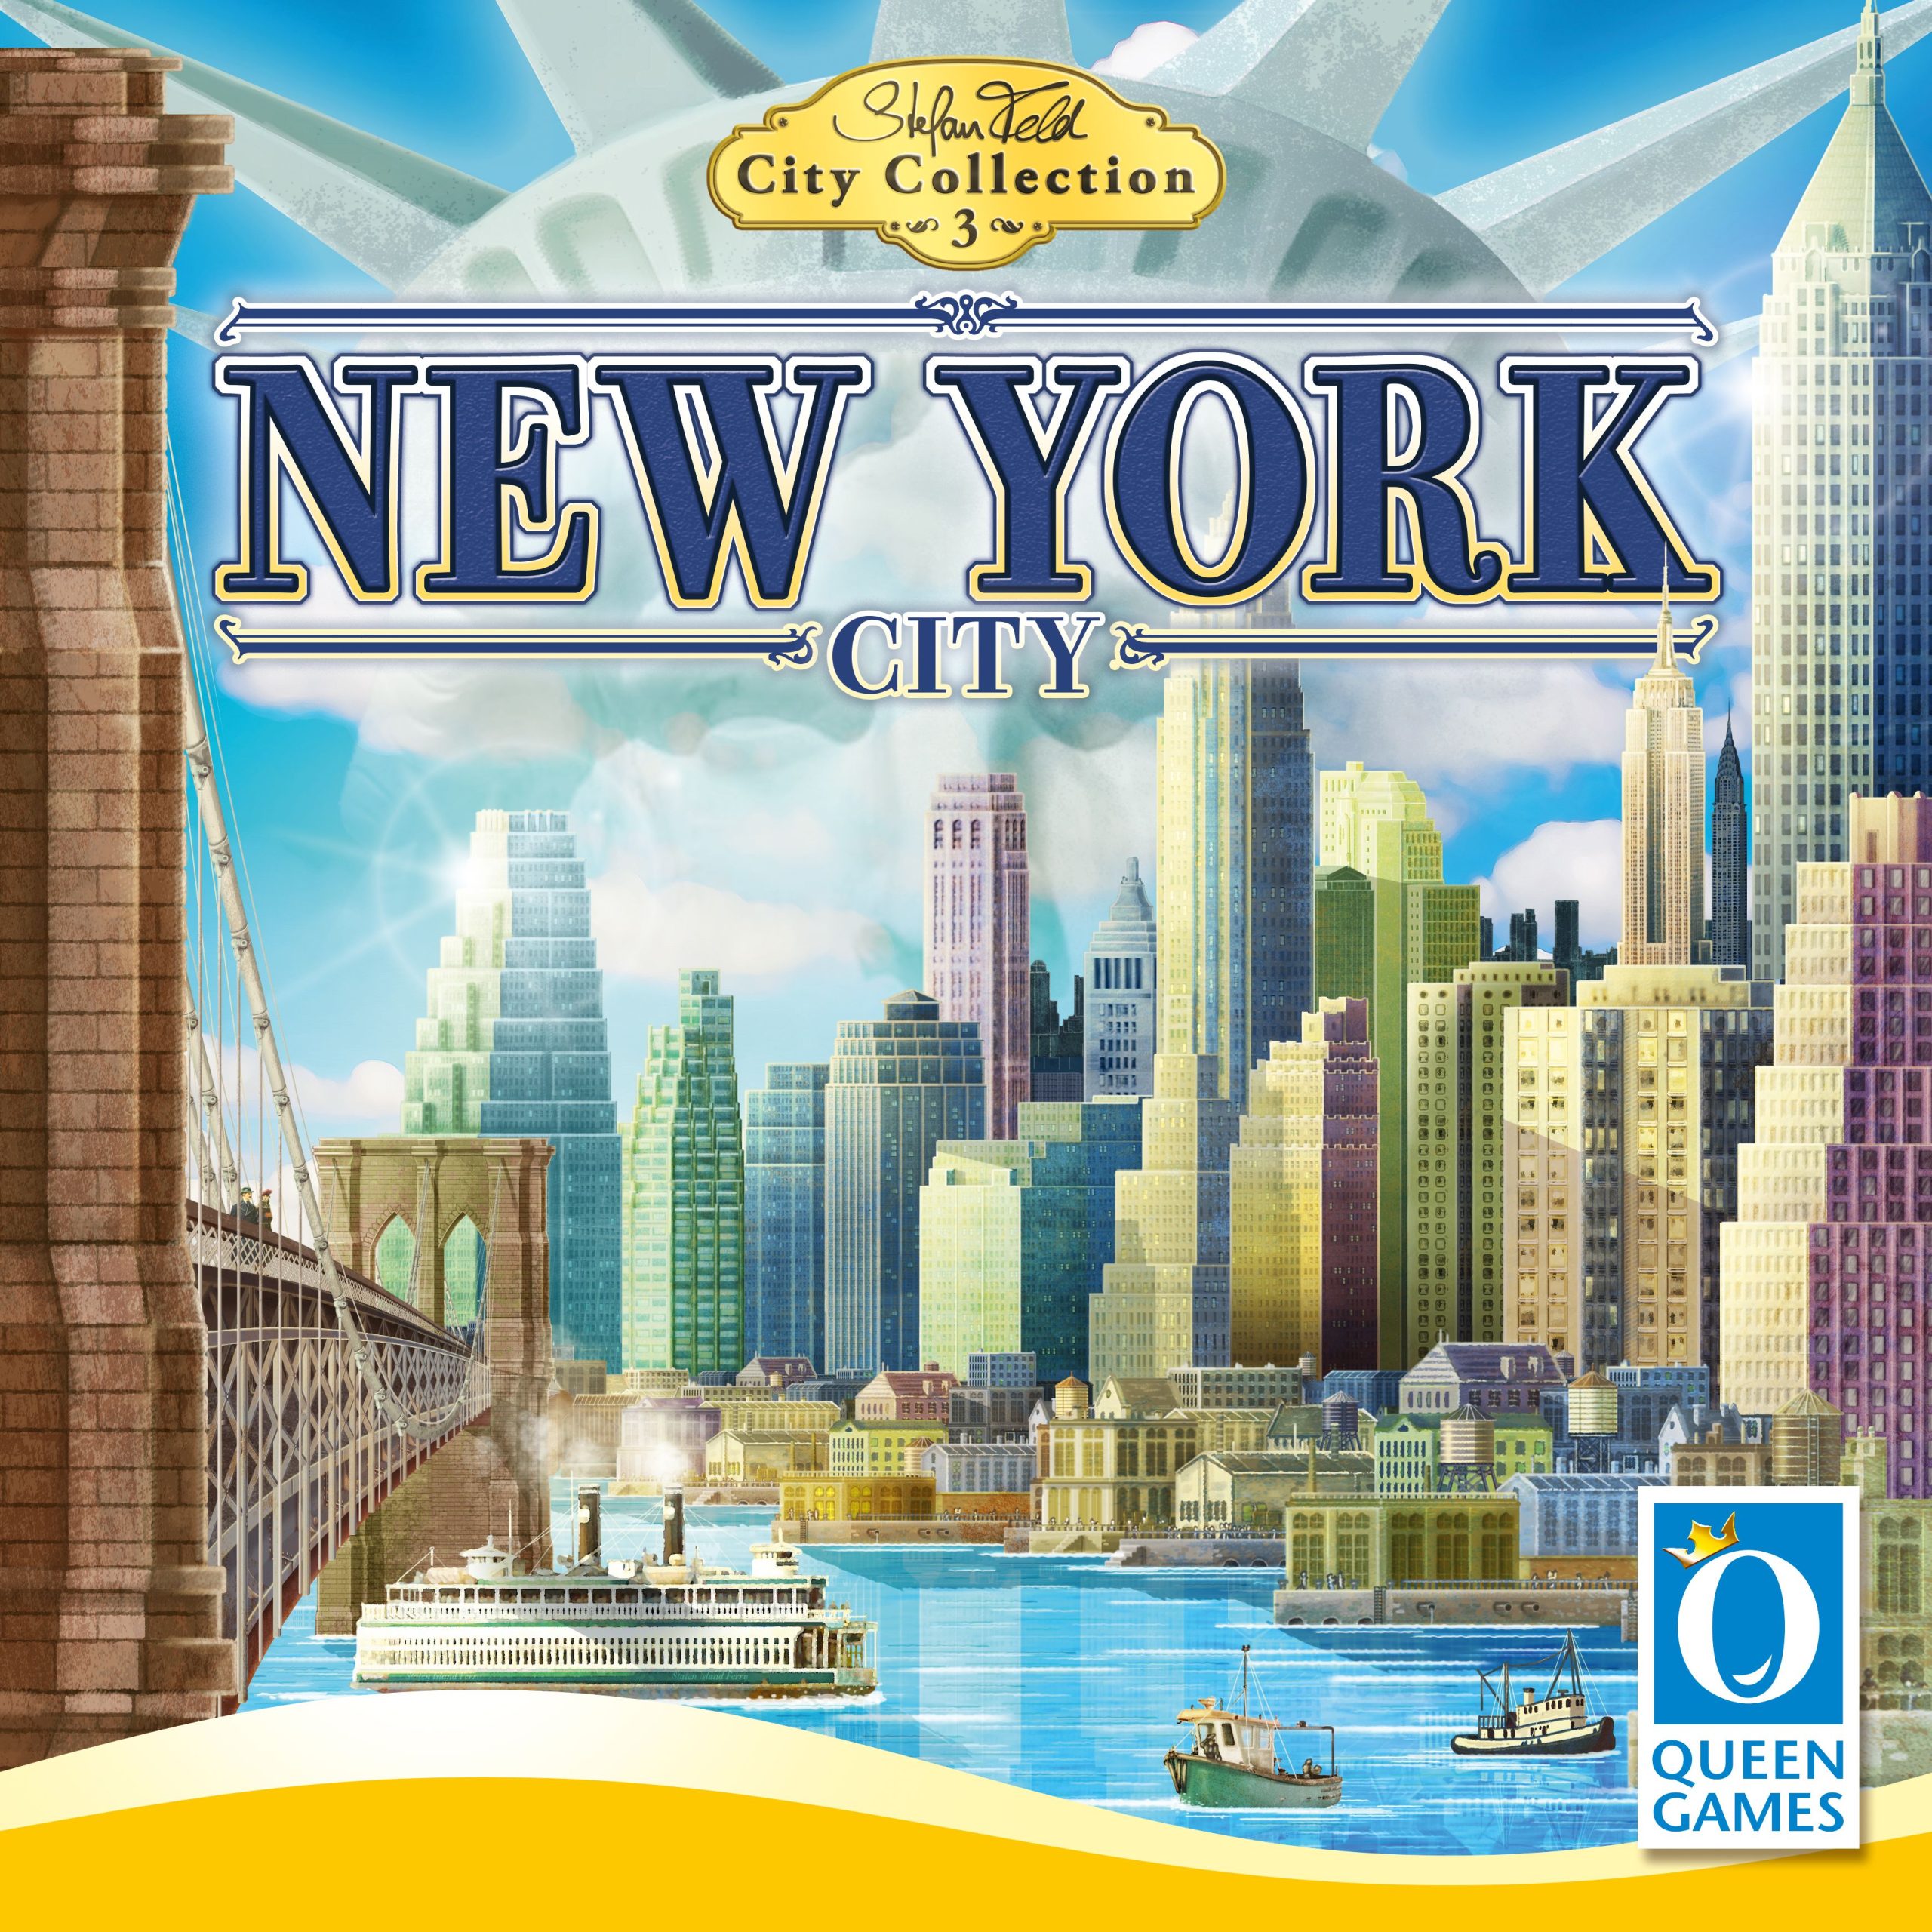 Queen games New York City